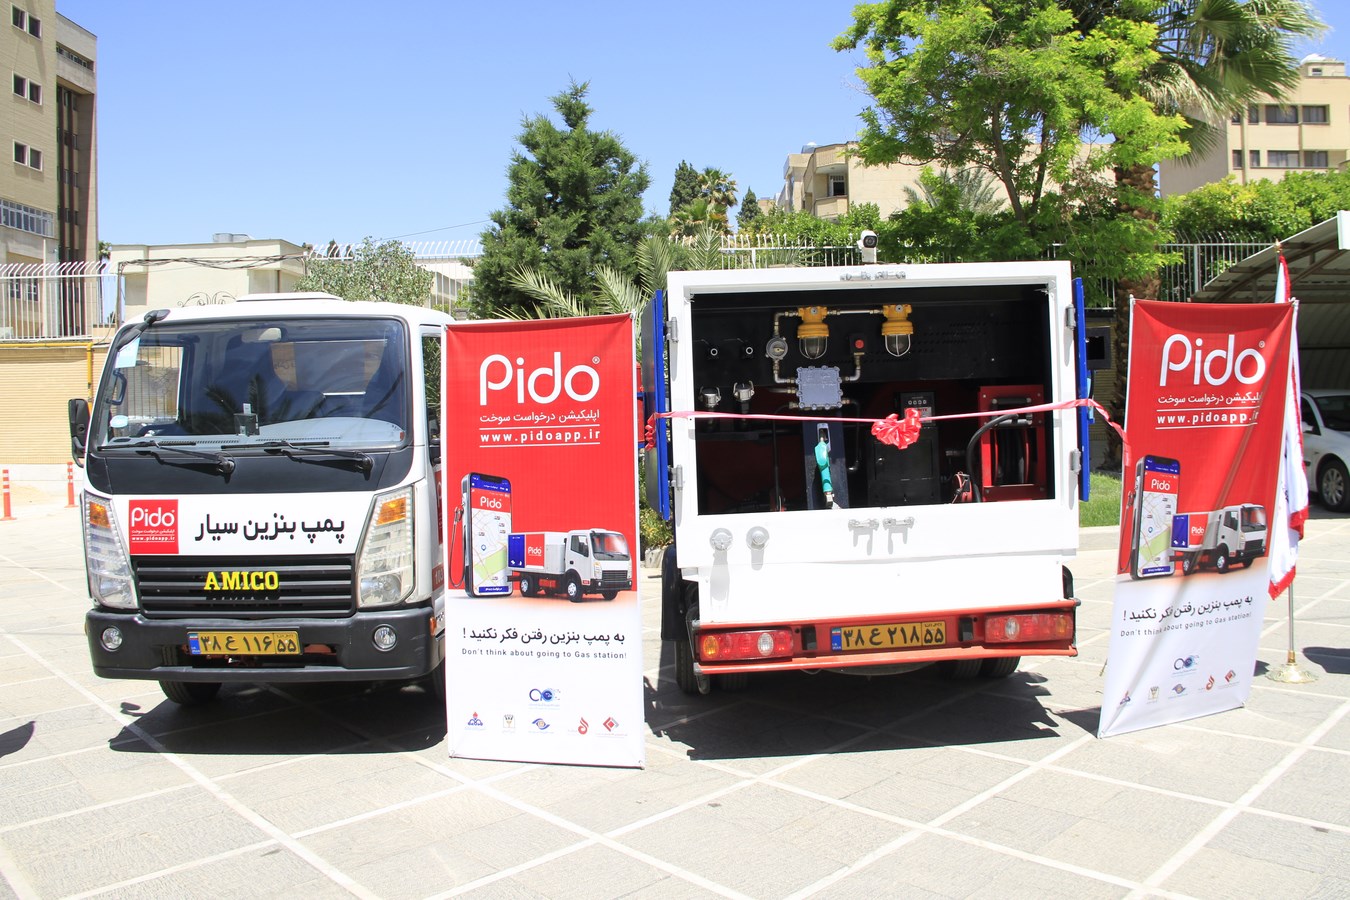 خدمات سوخت رسانی سیار در شیراز راه اندازی شد/ رونمایی از خودروهای پیدو